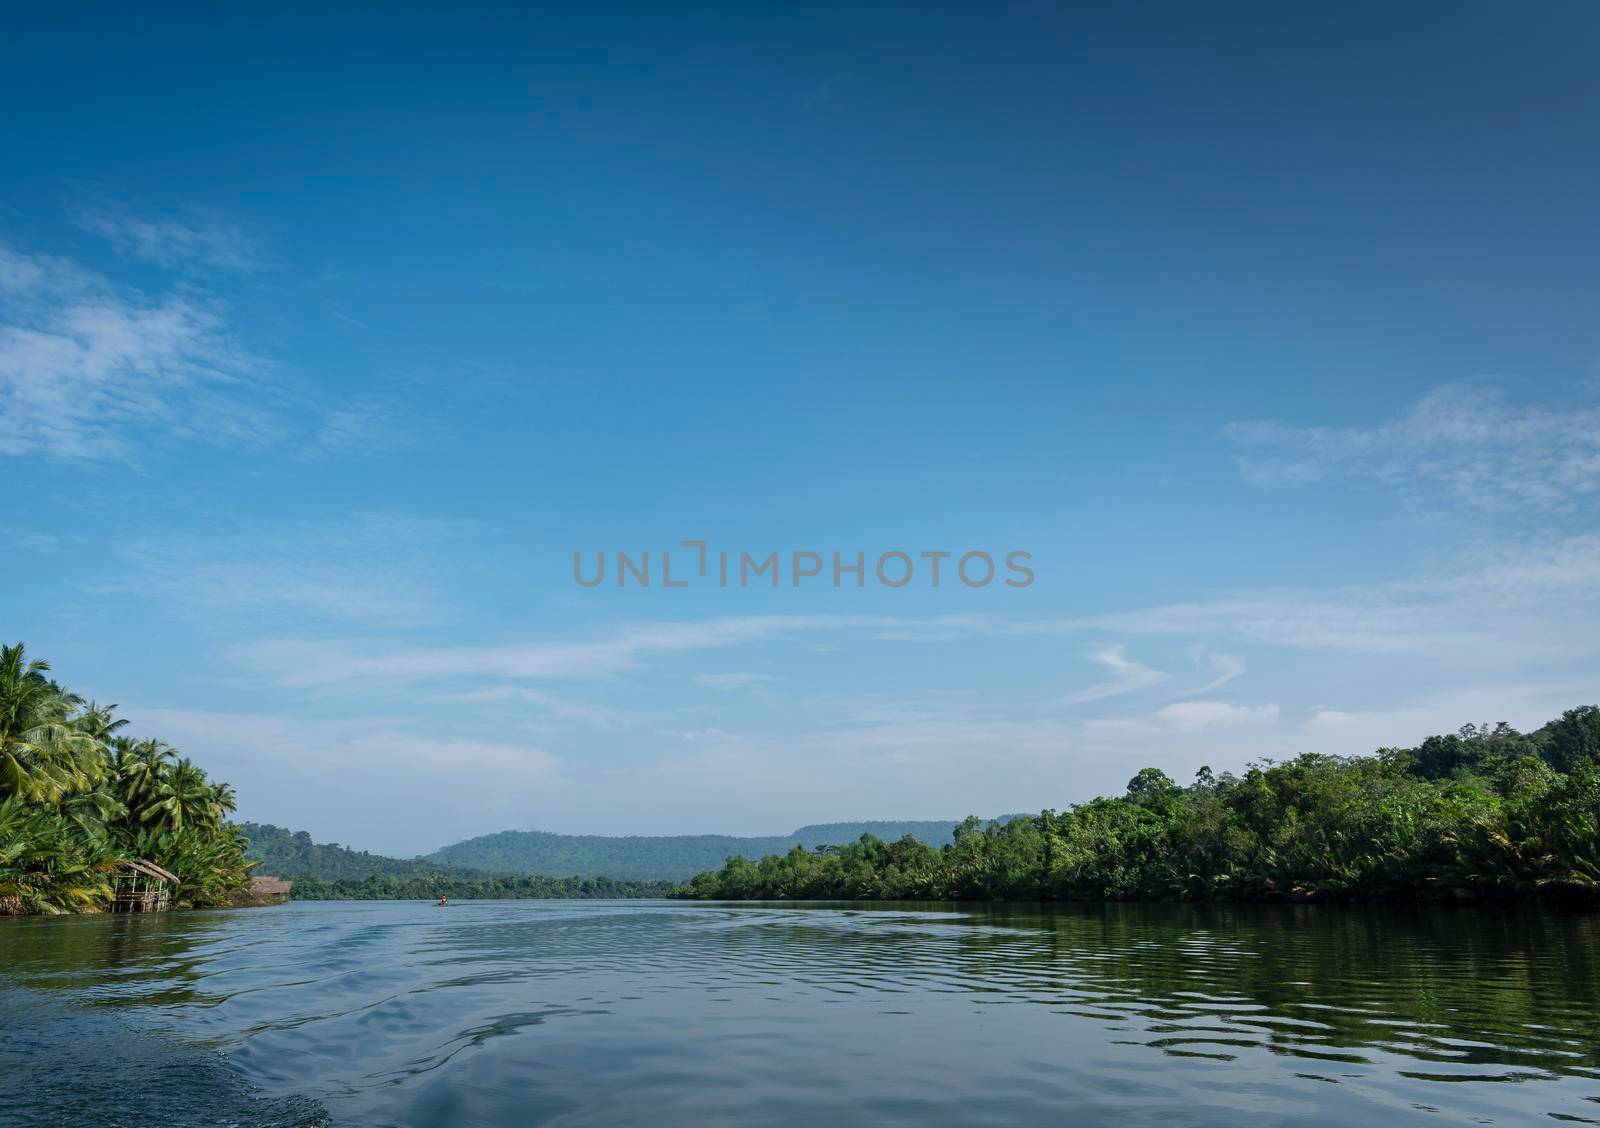 tatai river jungle nature scenic landscape in remote cardamom mountains cambodia